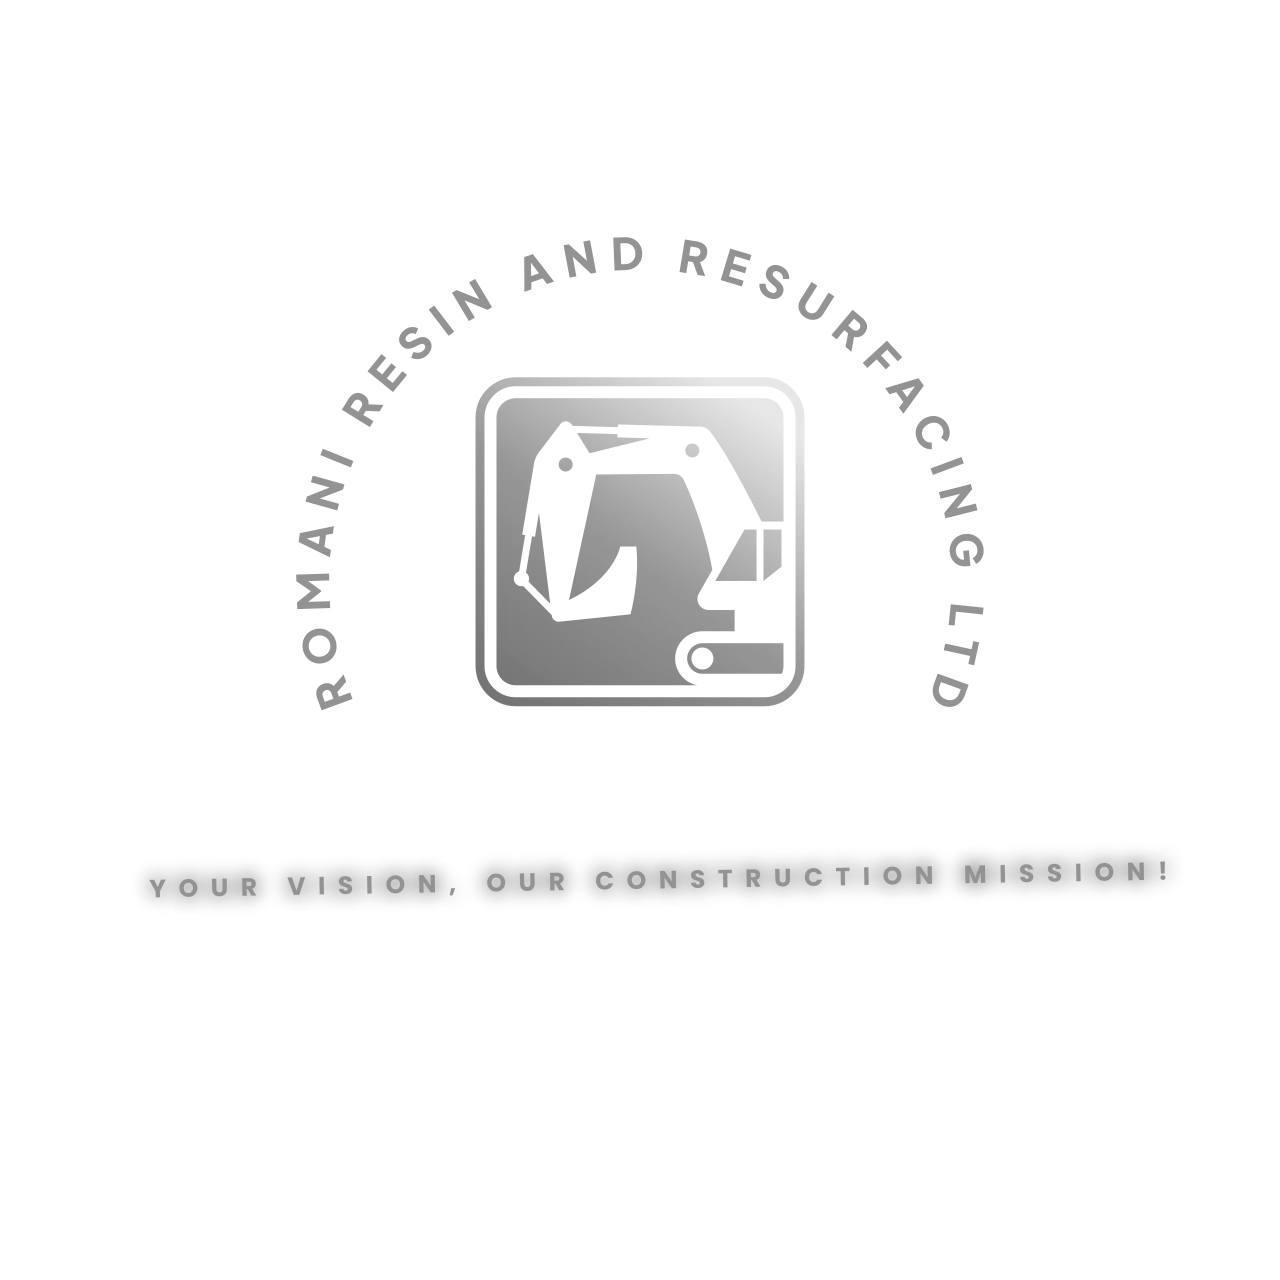 Romani Resin & Resurfacing Ltd Logo